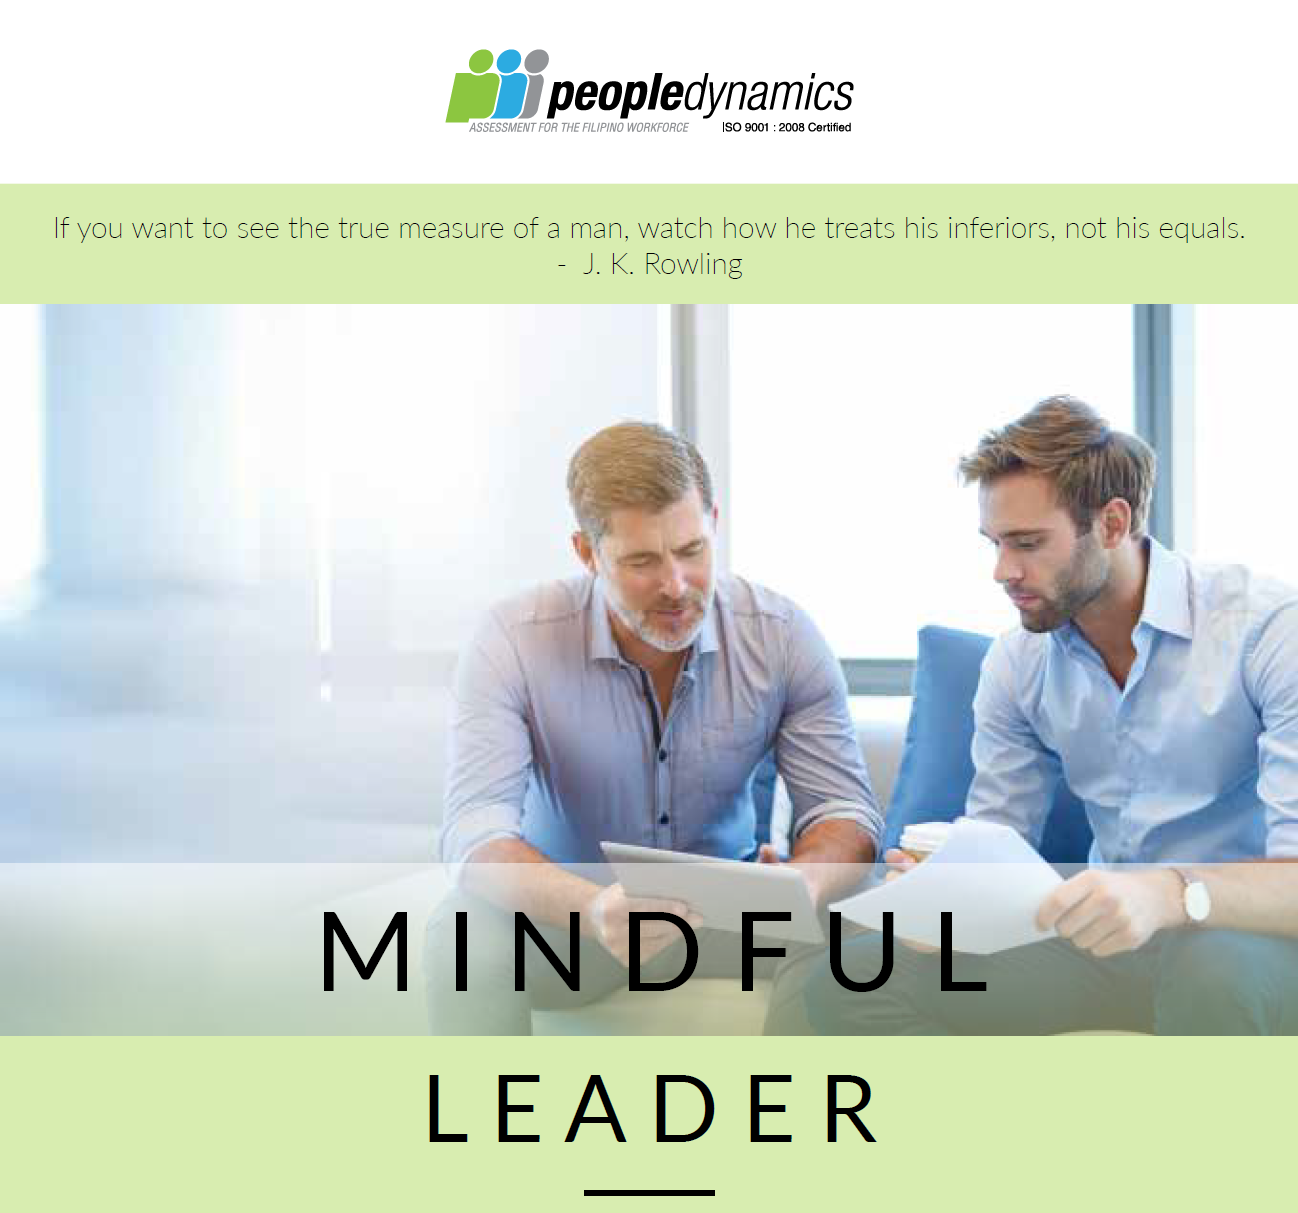 mindful leadership